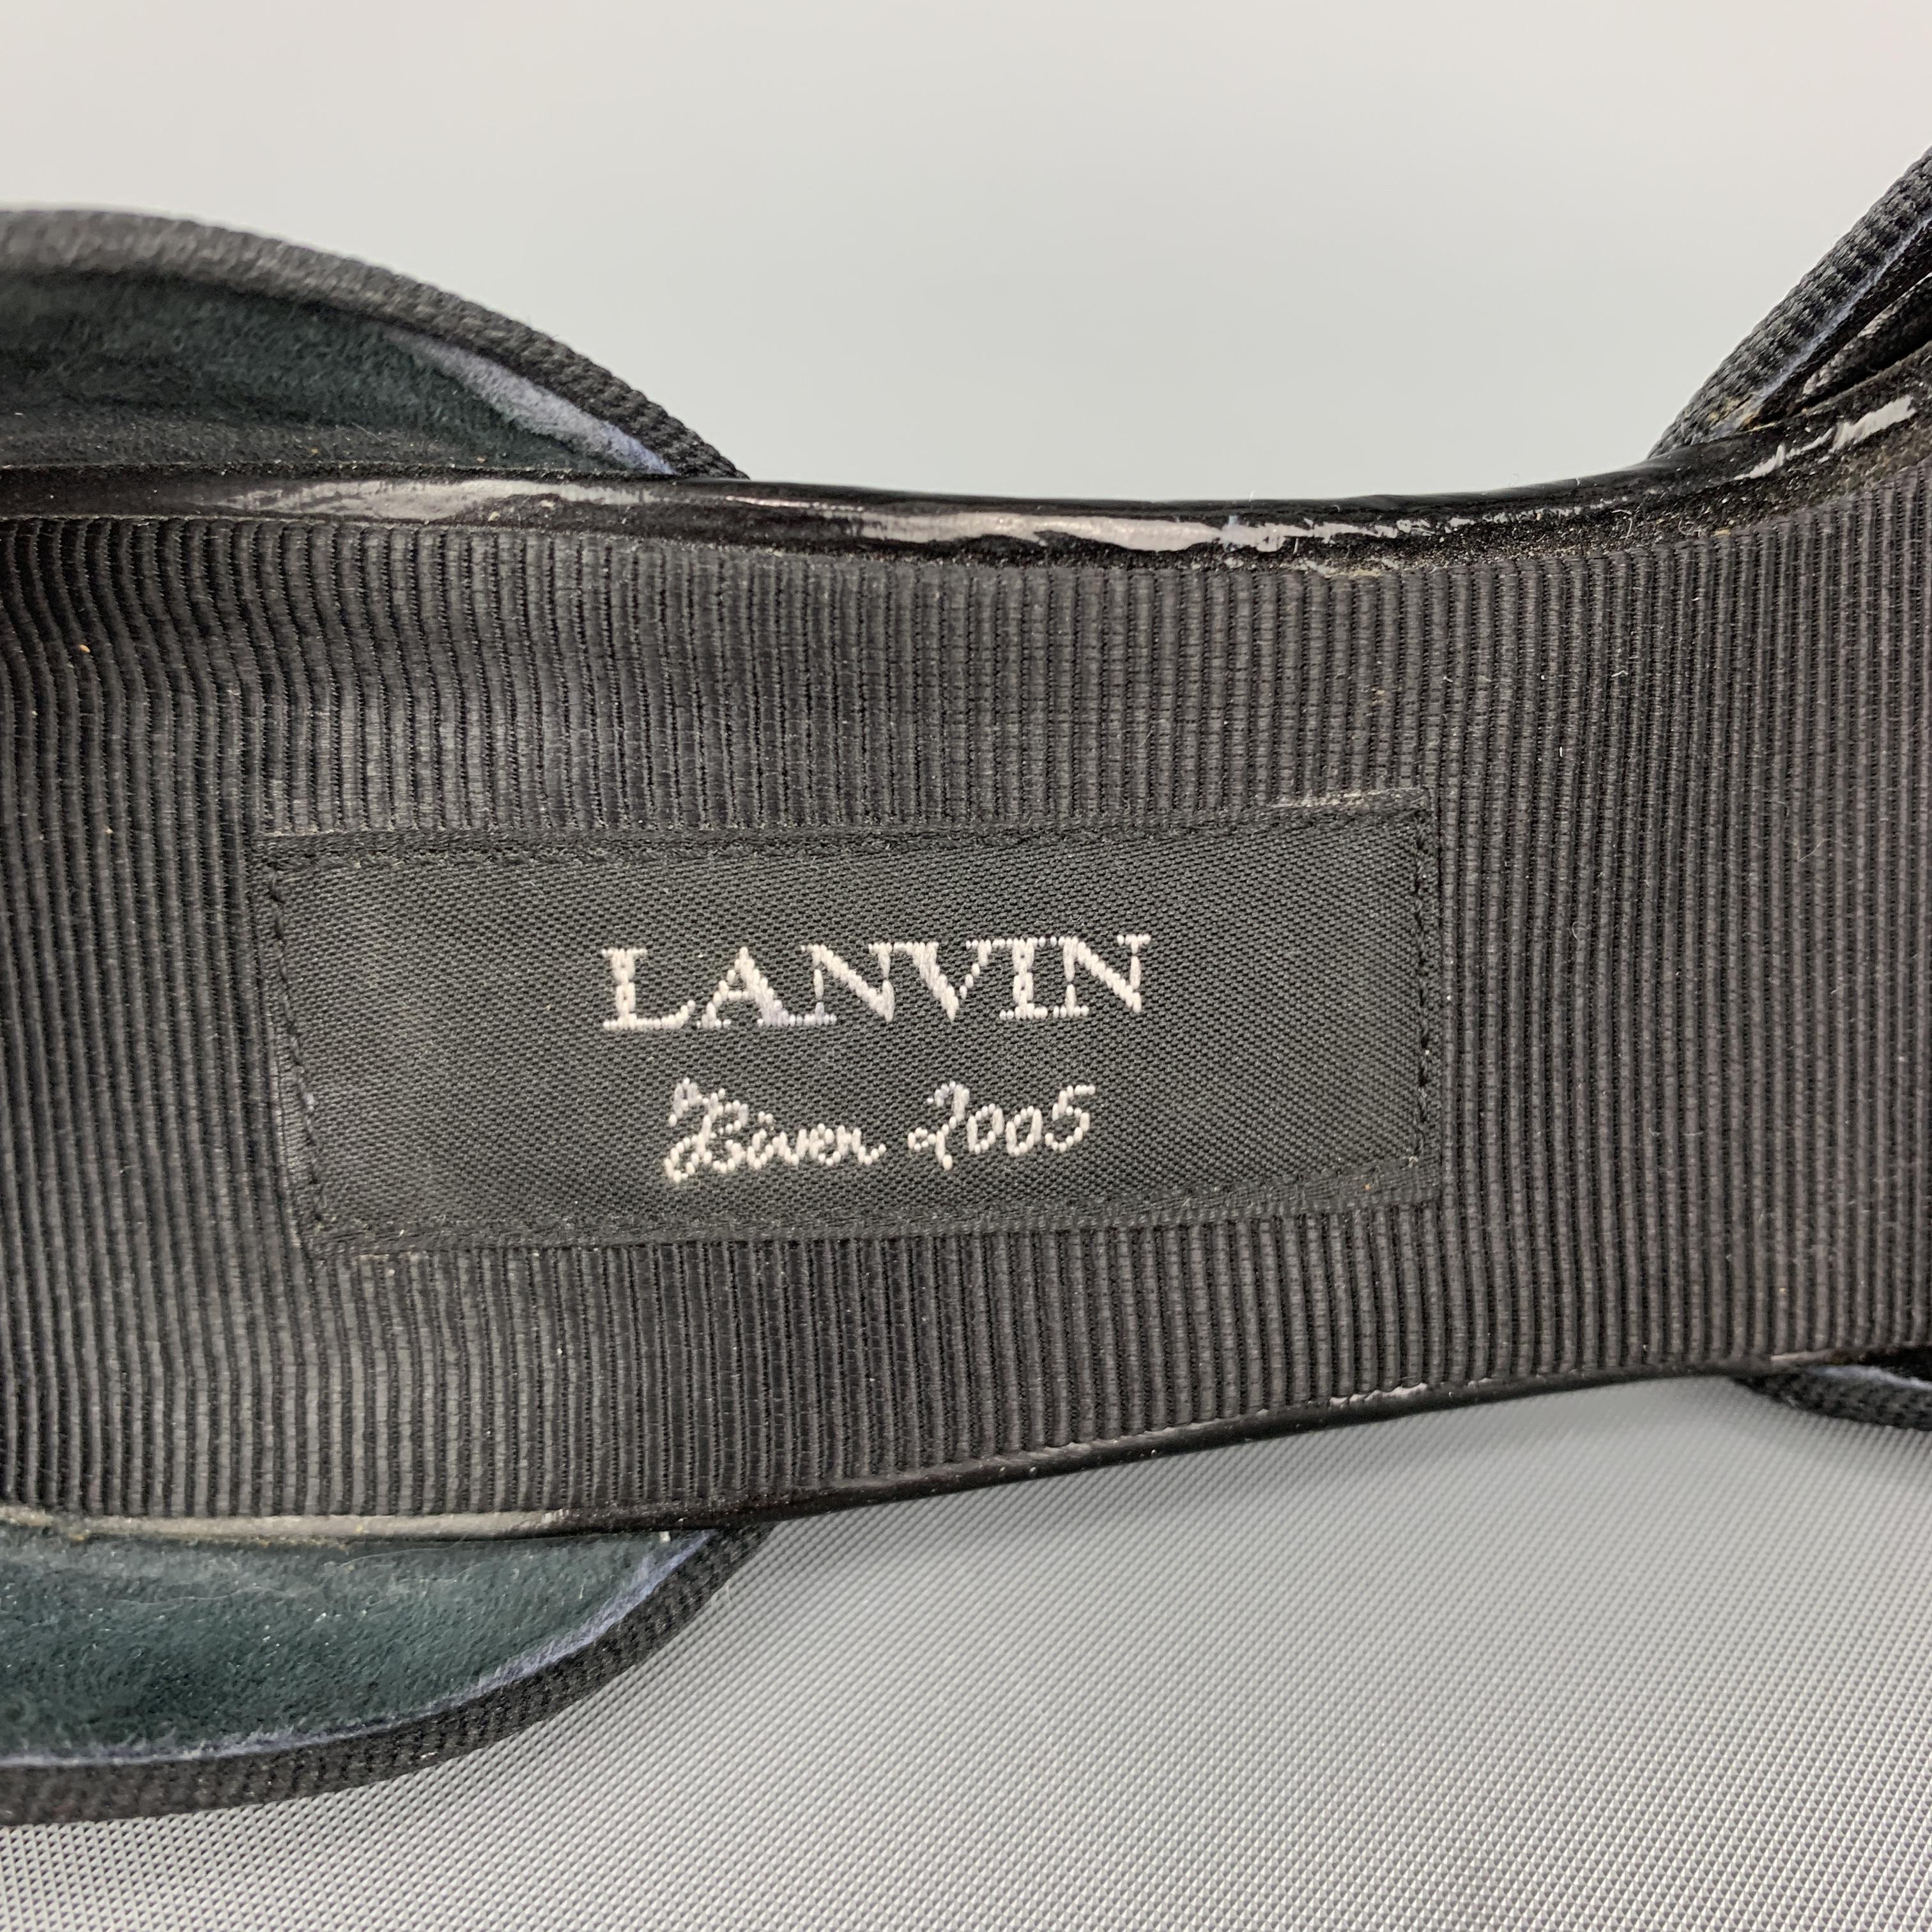 LANVIN Size 7 Black Patent Leather D'Orsay Peep Toe Pumps 2